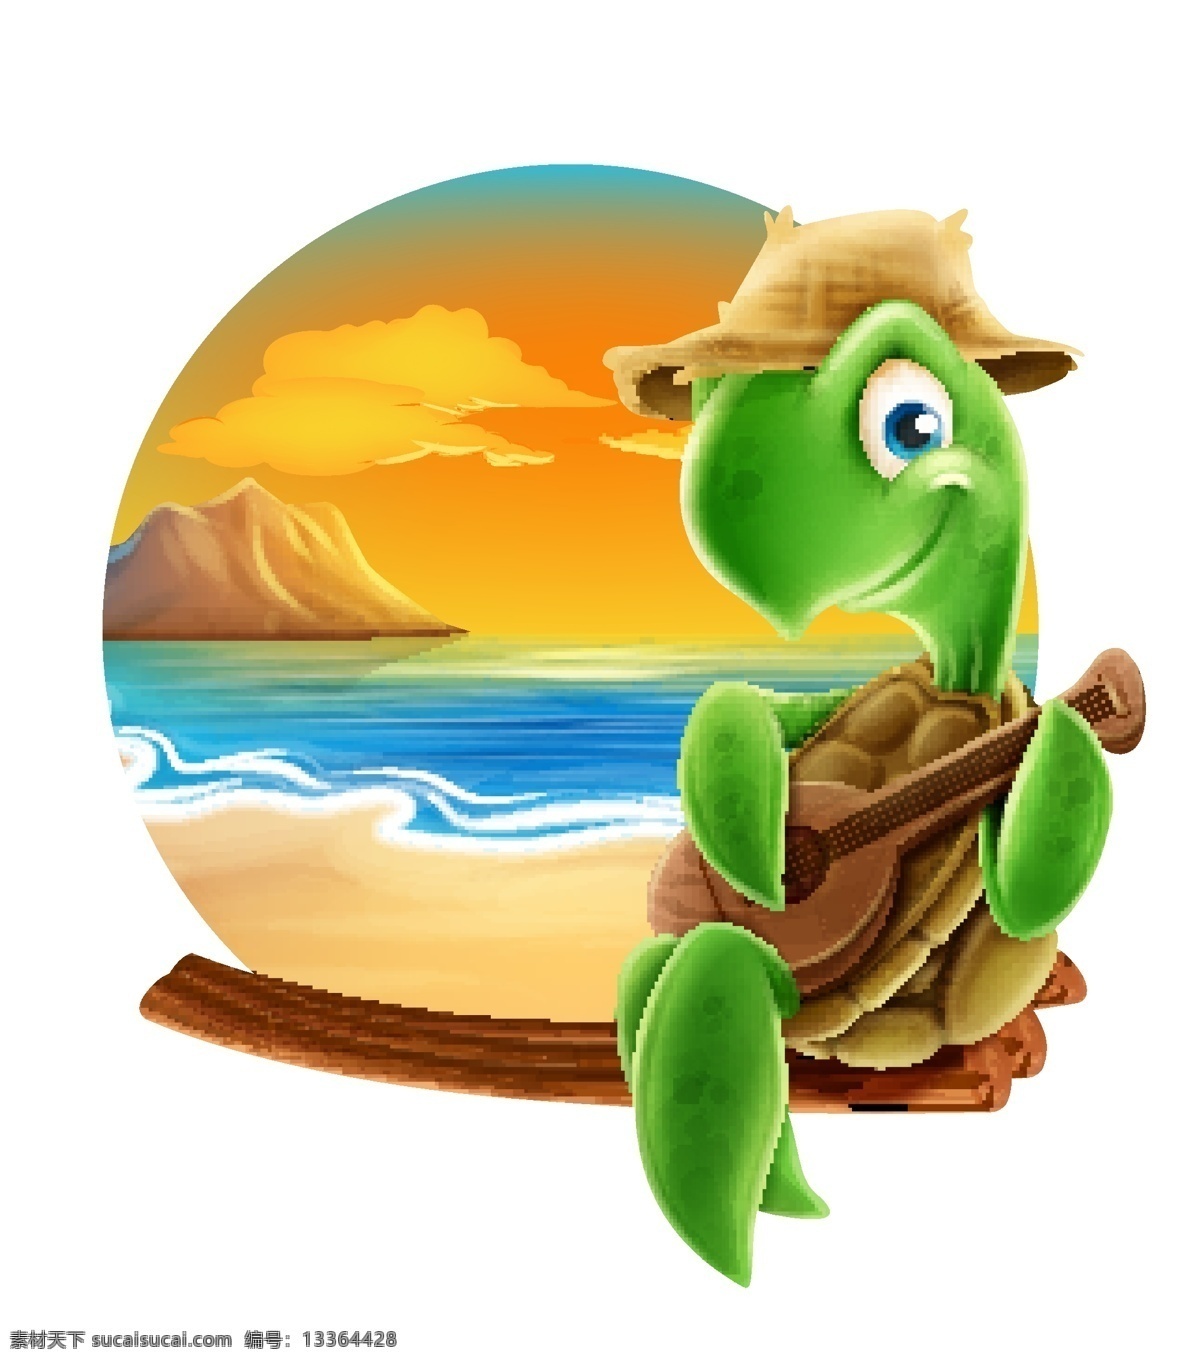 夏季 海滩 弹 尤克 里里 海龟 矢量图 卡通 可爱 夏天 音乐 万克里里 动物